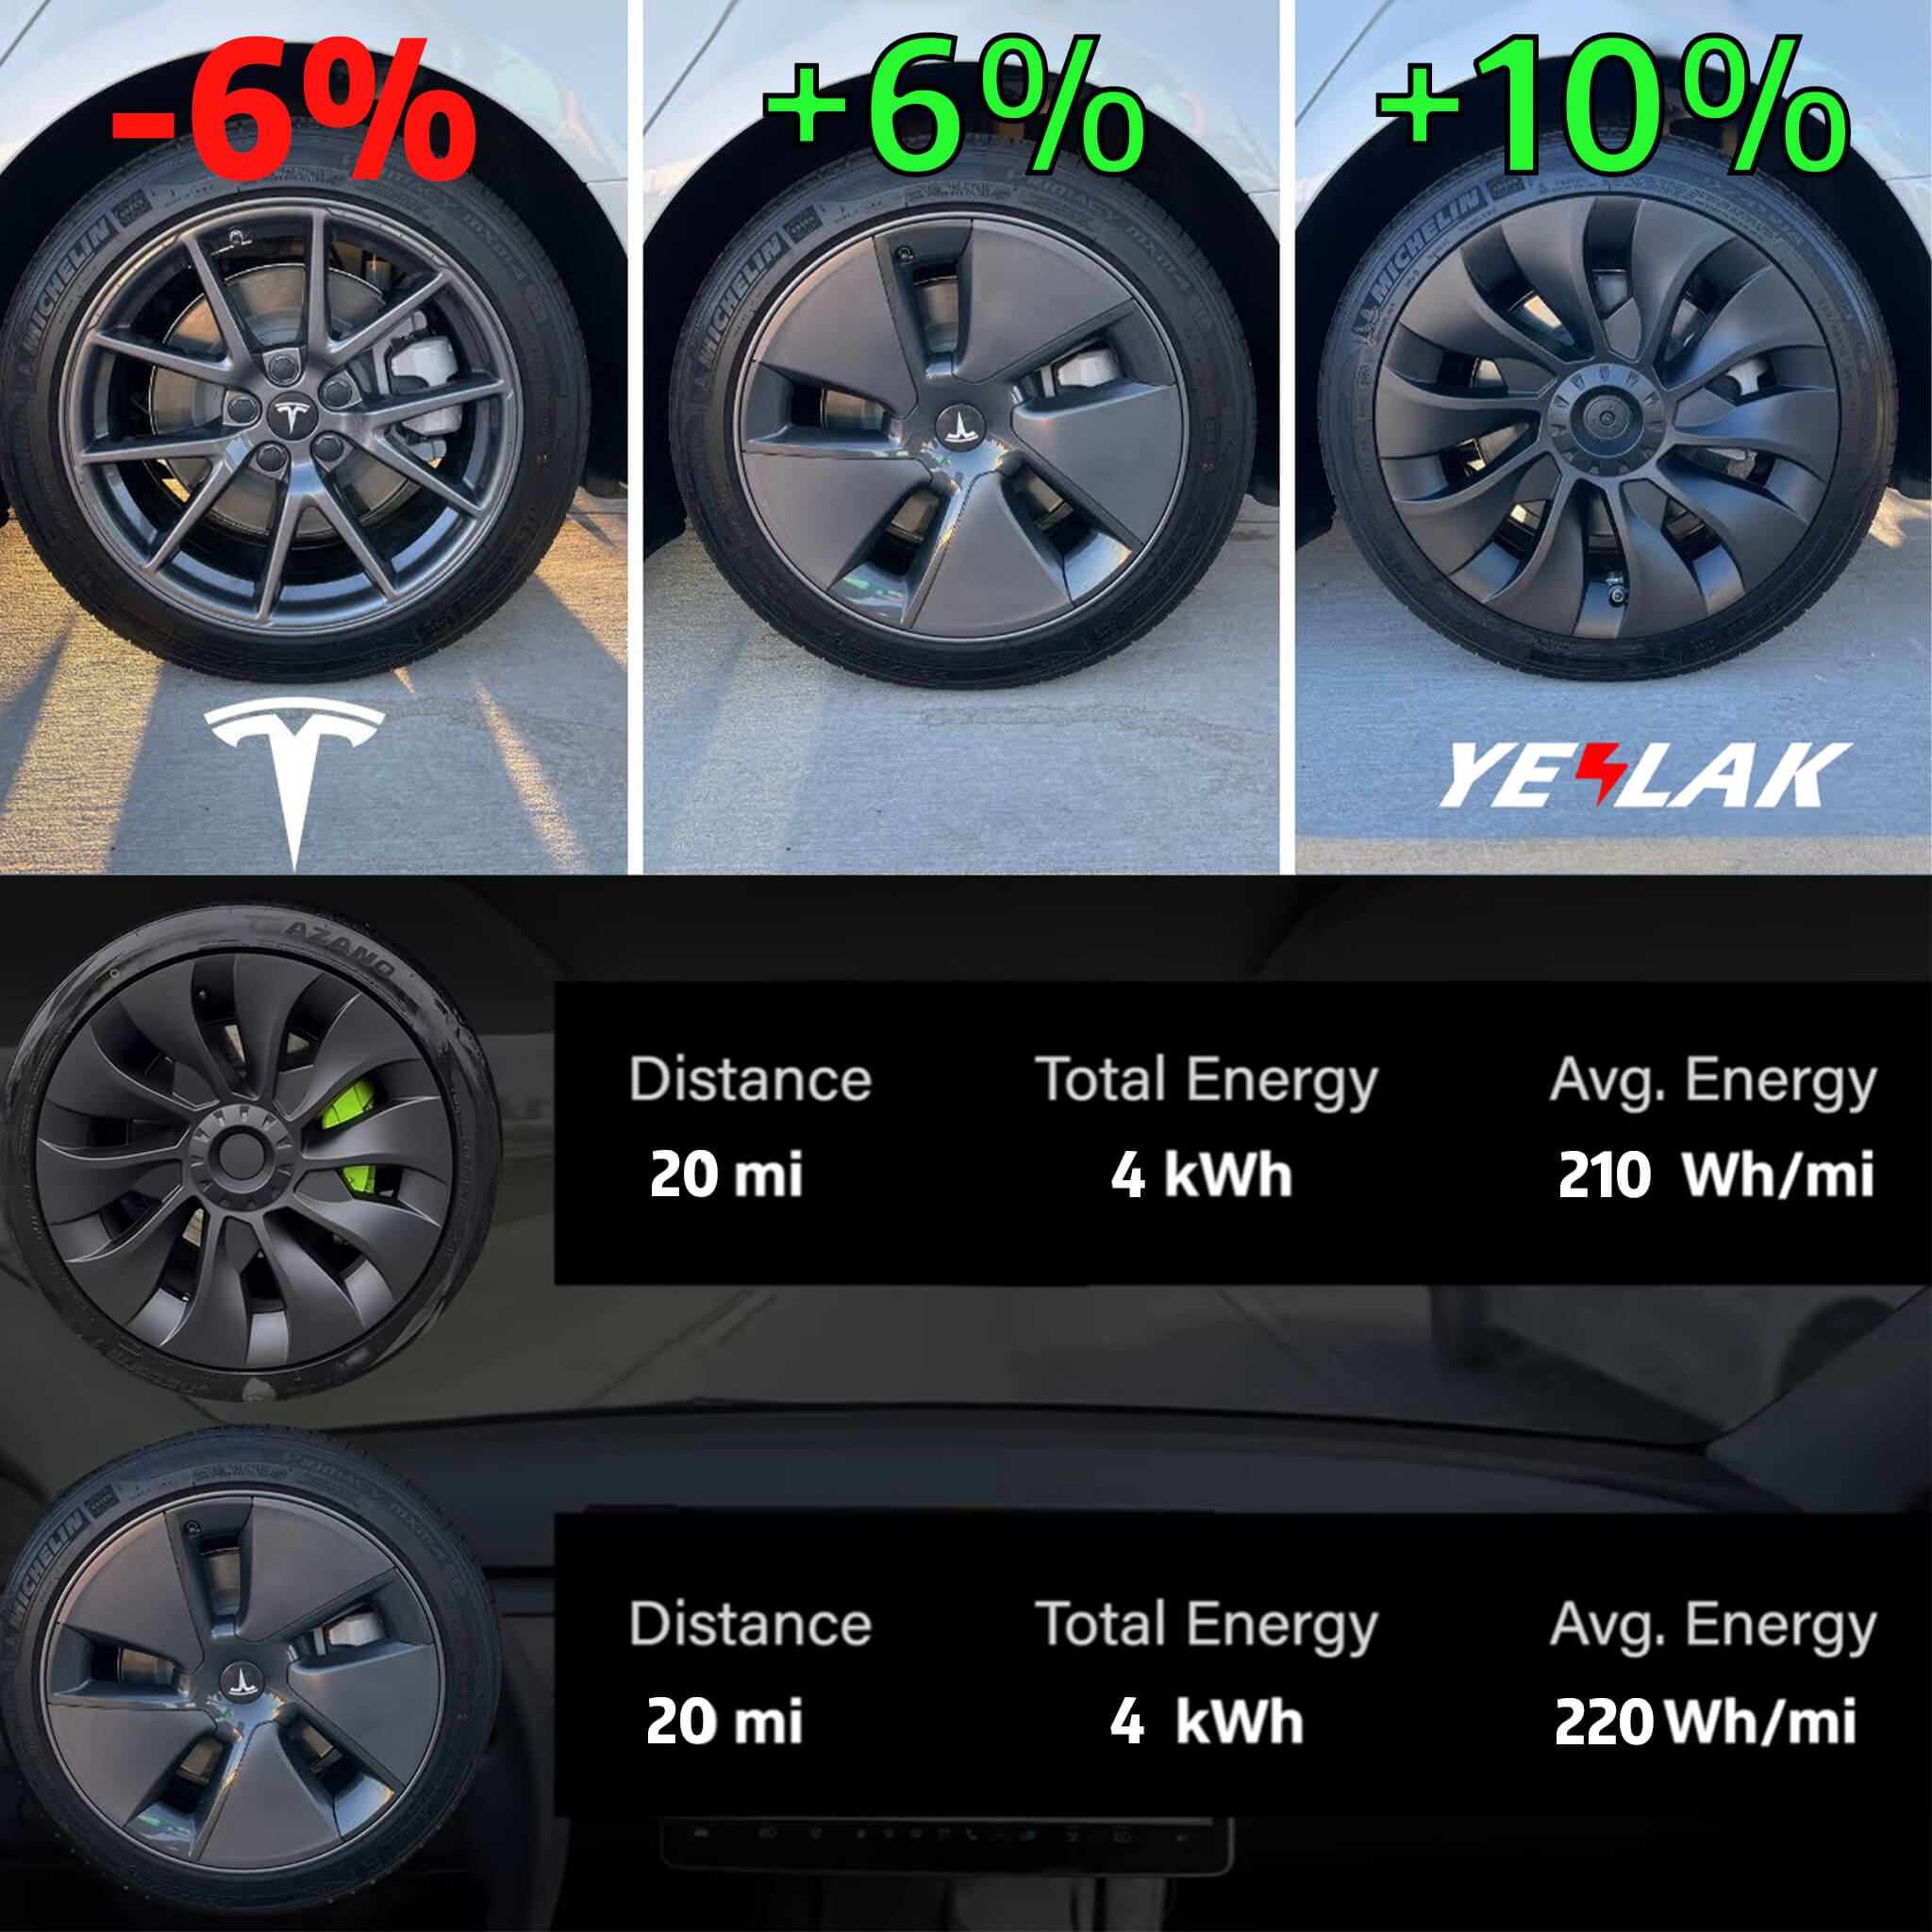 Yeslak Model 3 Uberturbine Style Wheel Covers VS OEM Wheel Covers